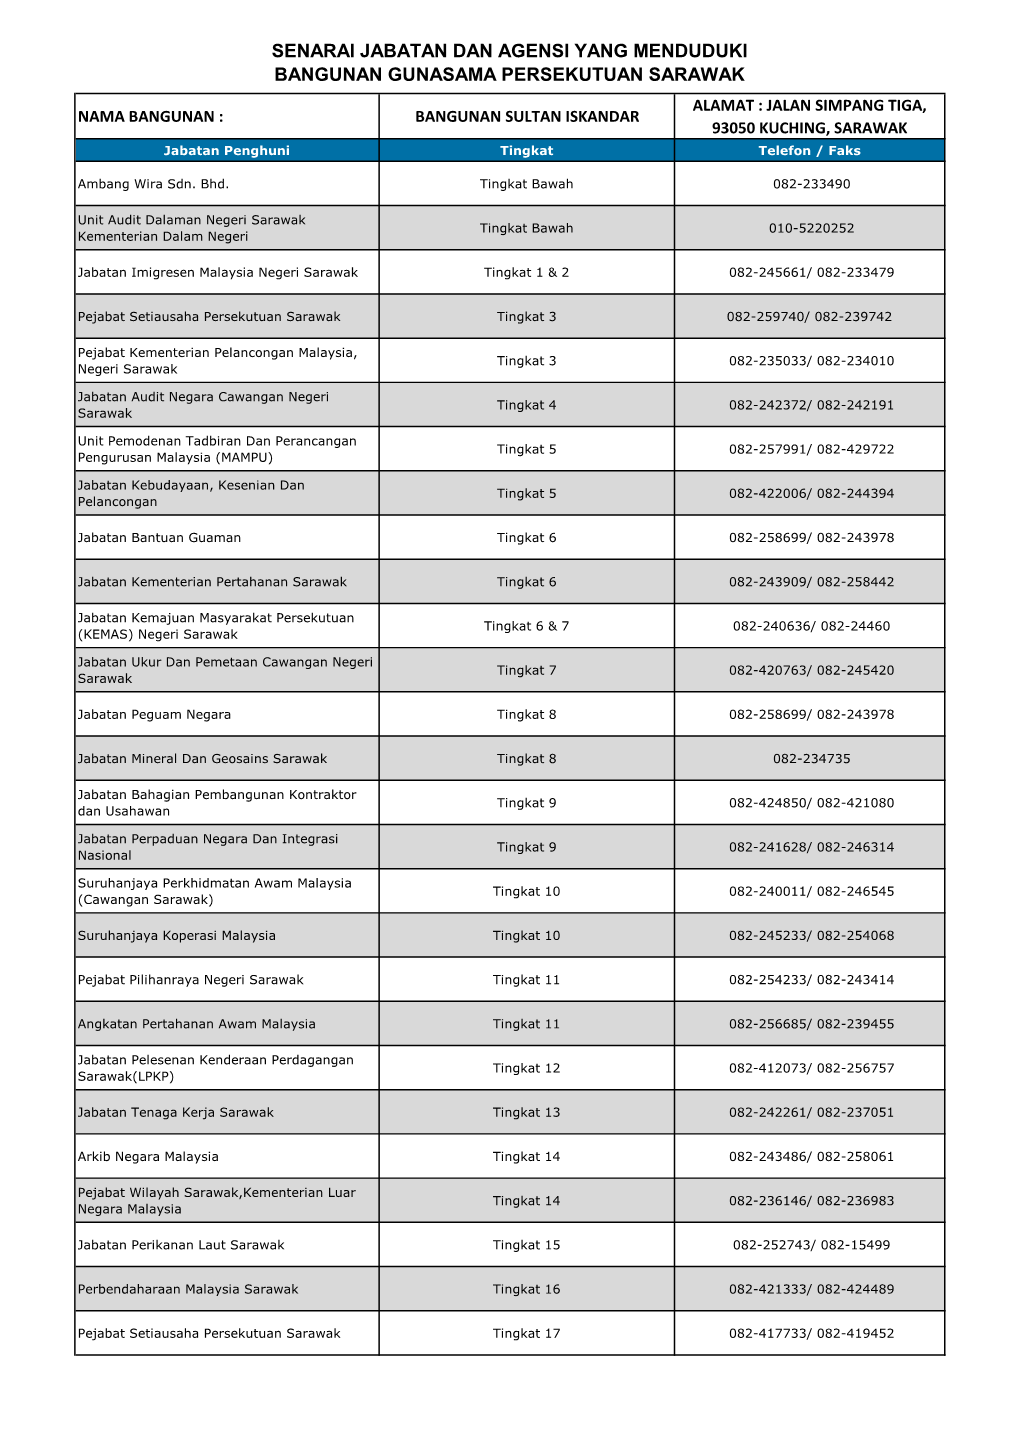 Senarai Jabatan Dan Agensi Yang Menduduki Bangunan Gunasama Persekutuan Sarawak